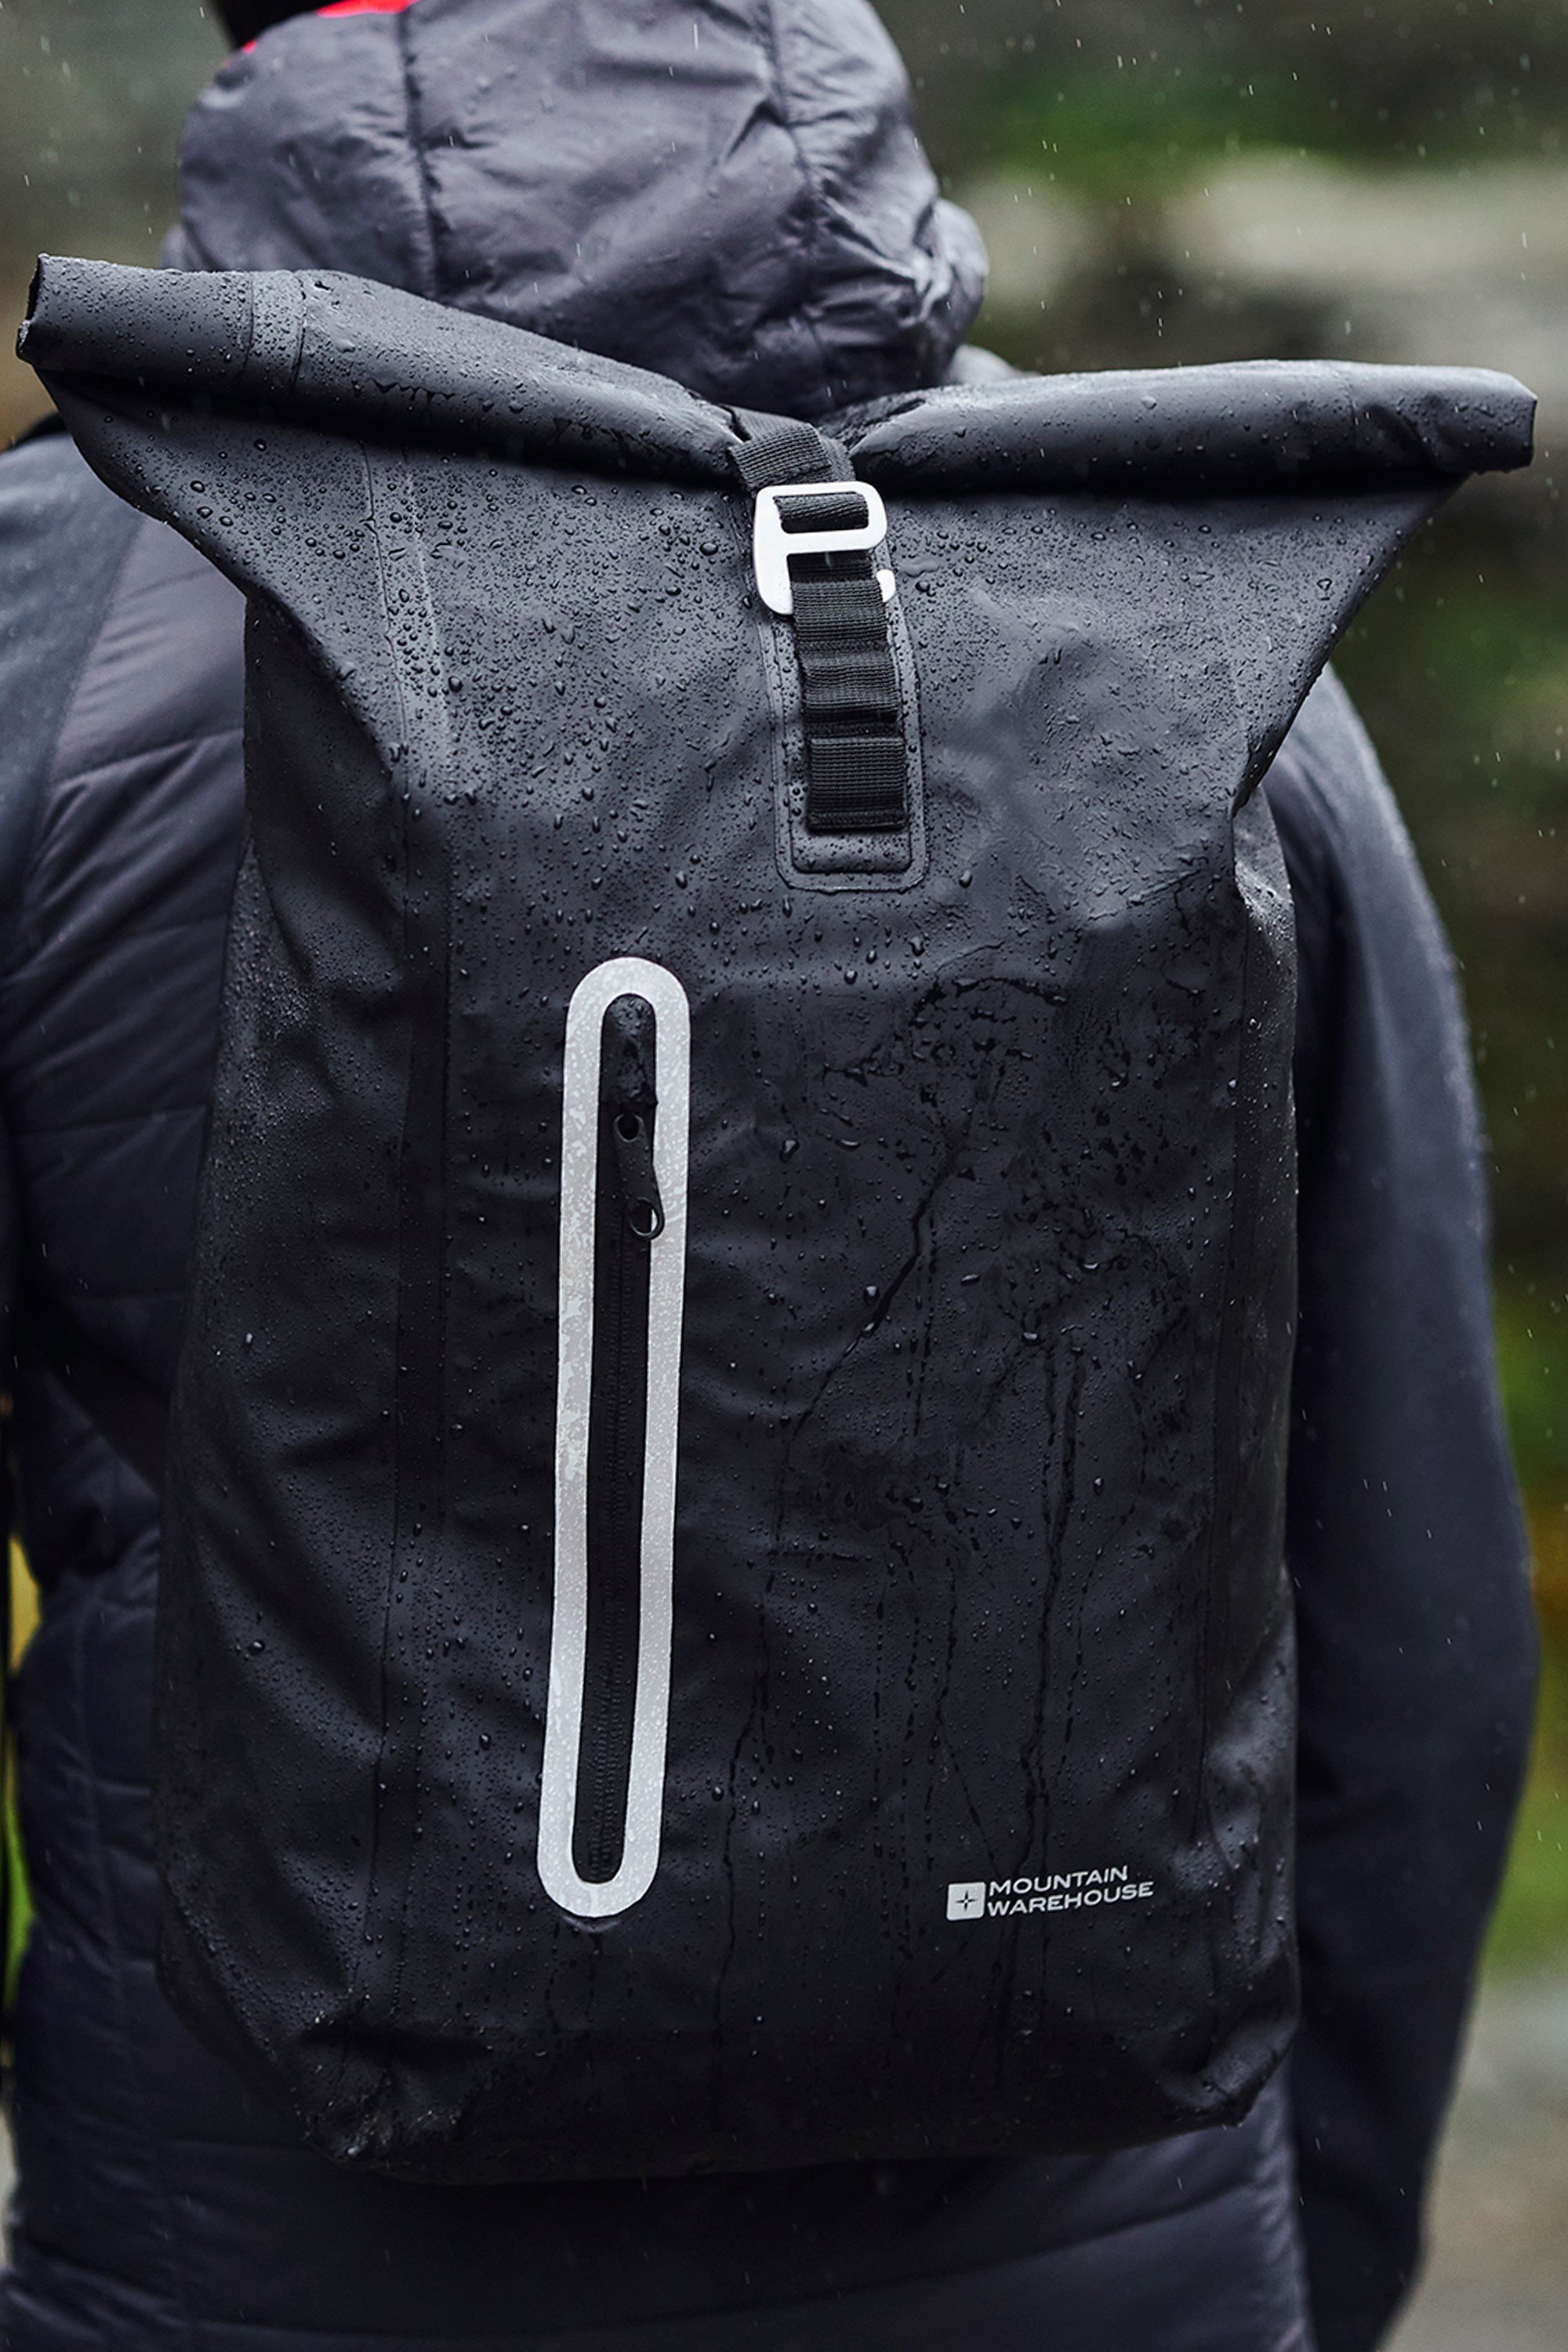 Mountain Warehouse Medium Rucksack Rain Cover Waterproof Camping Bag Protector 